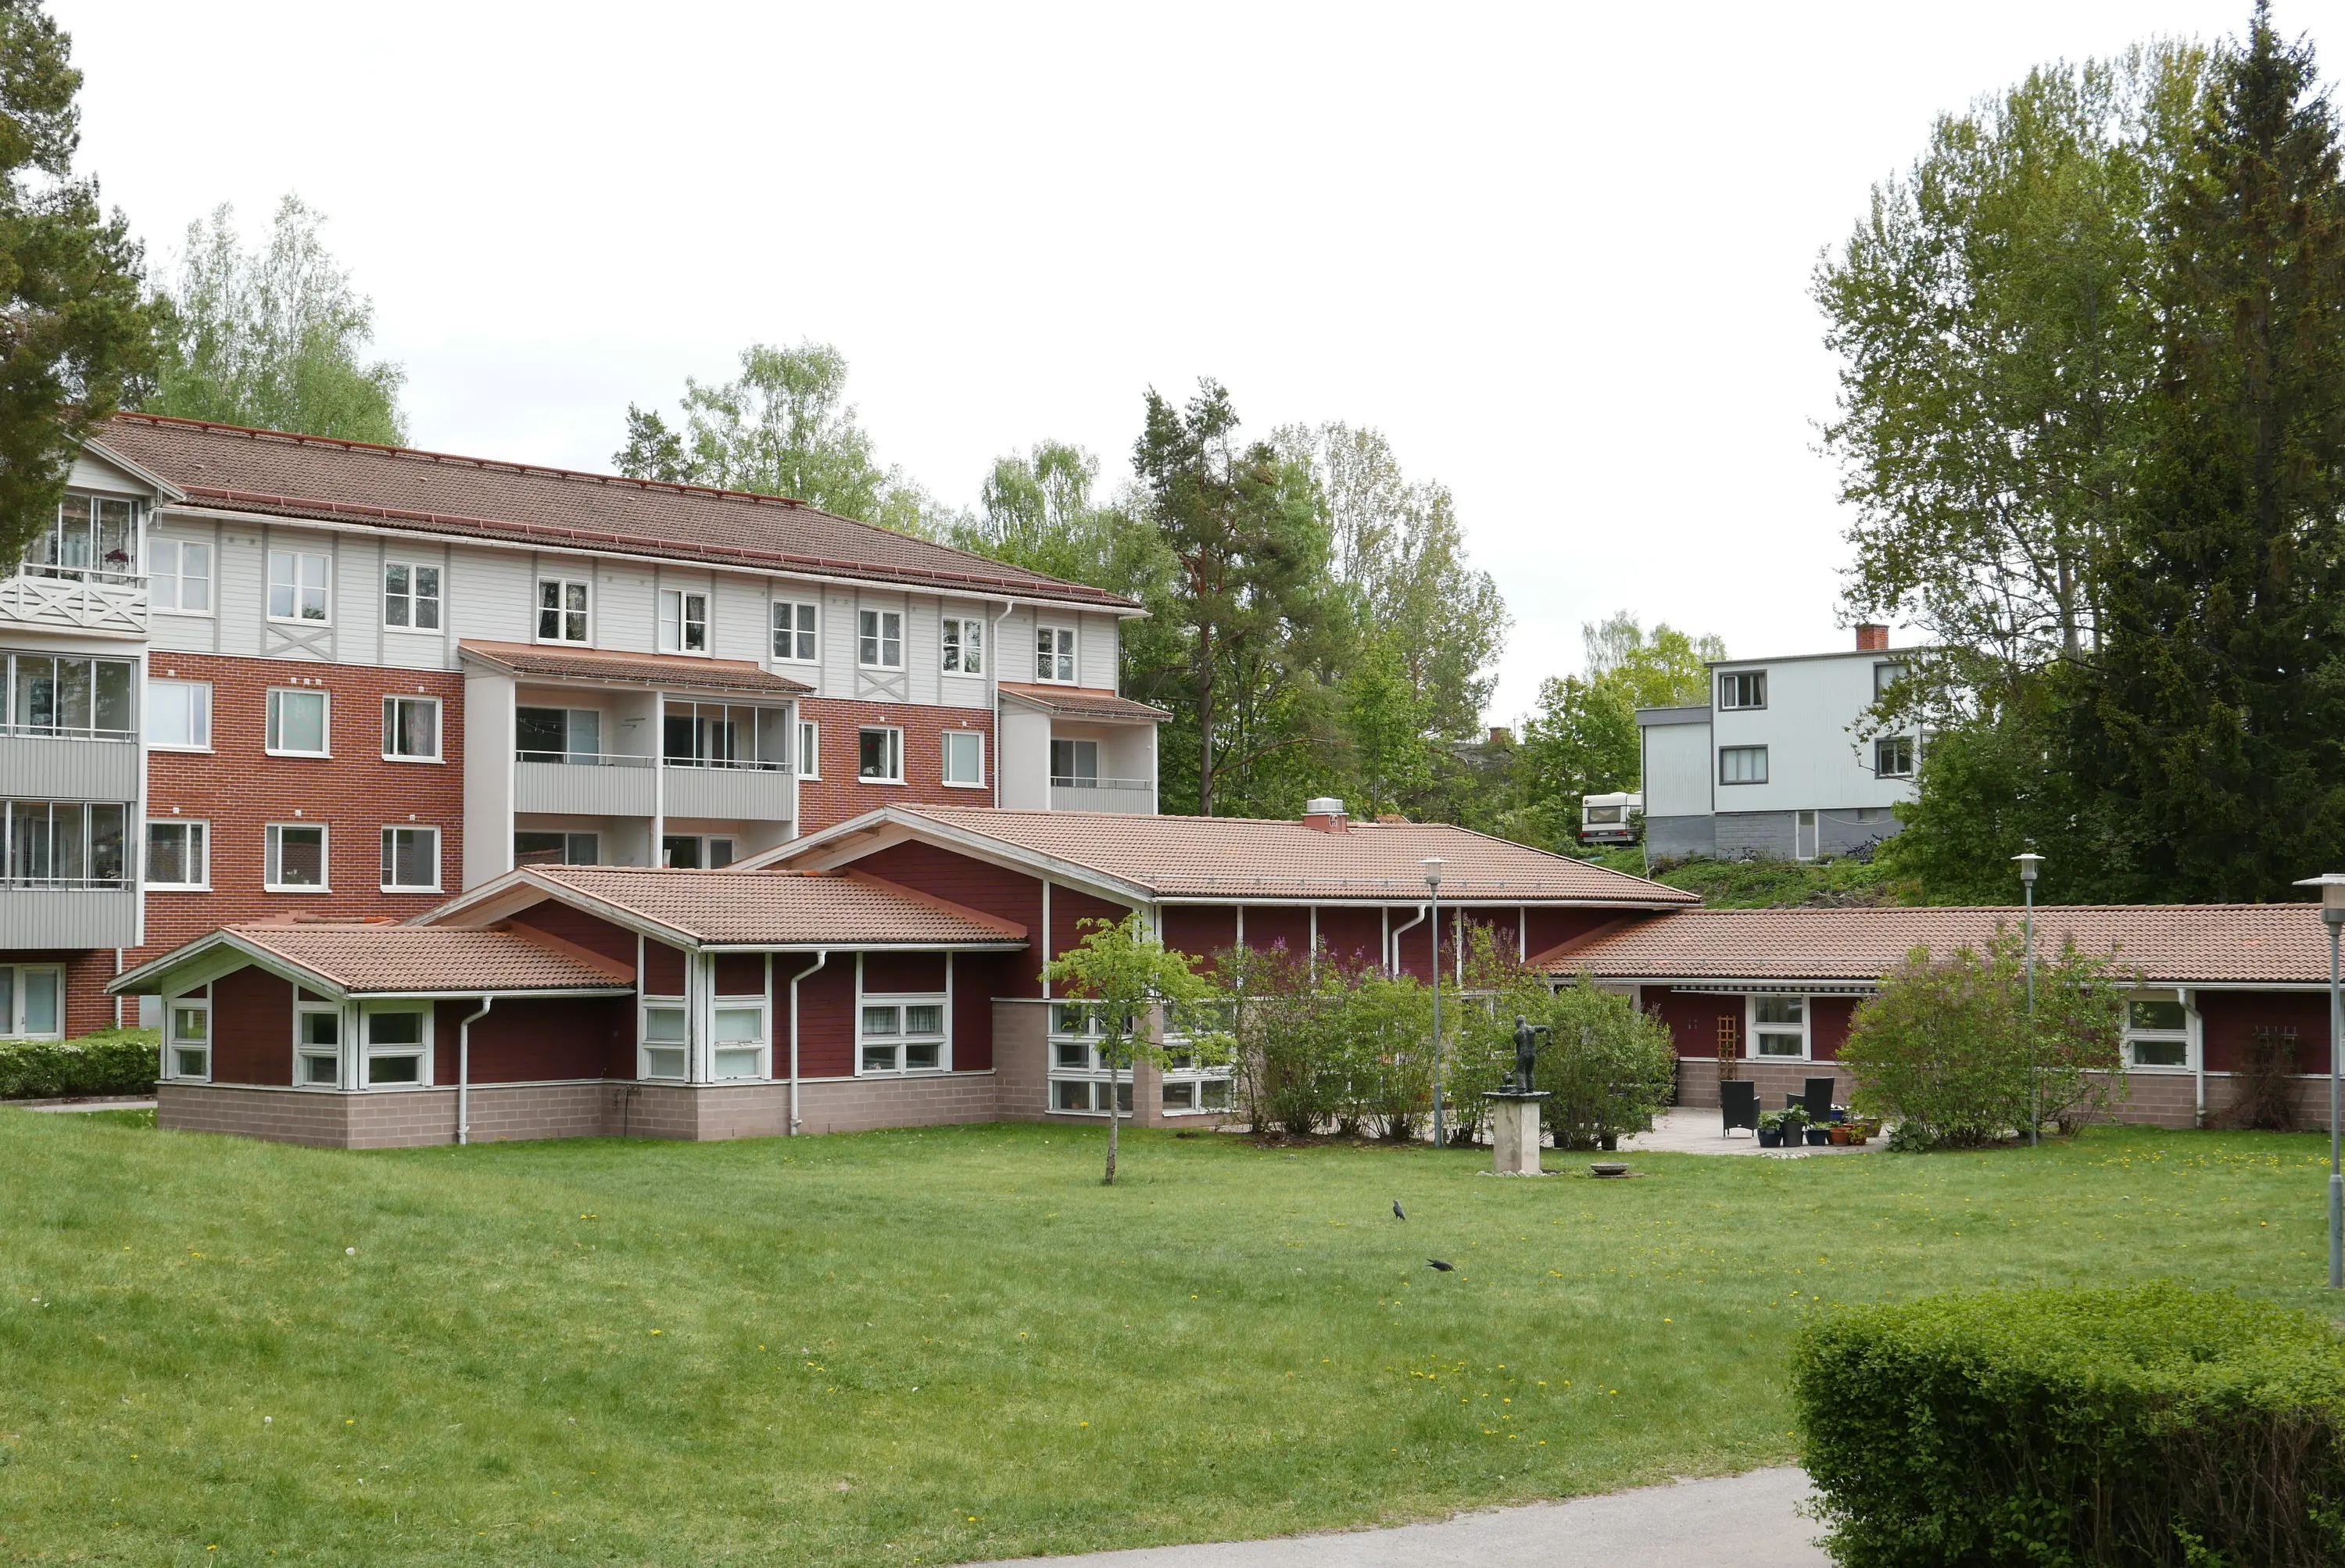 Grön gräsmatta i förgrund med ett lägenhetshus i tegel och trä i bakgrunden 